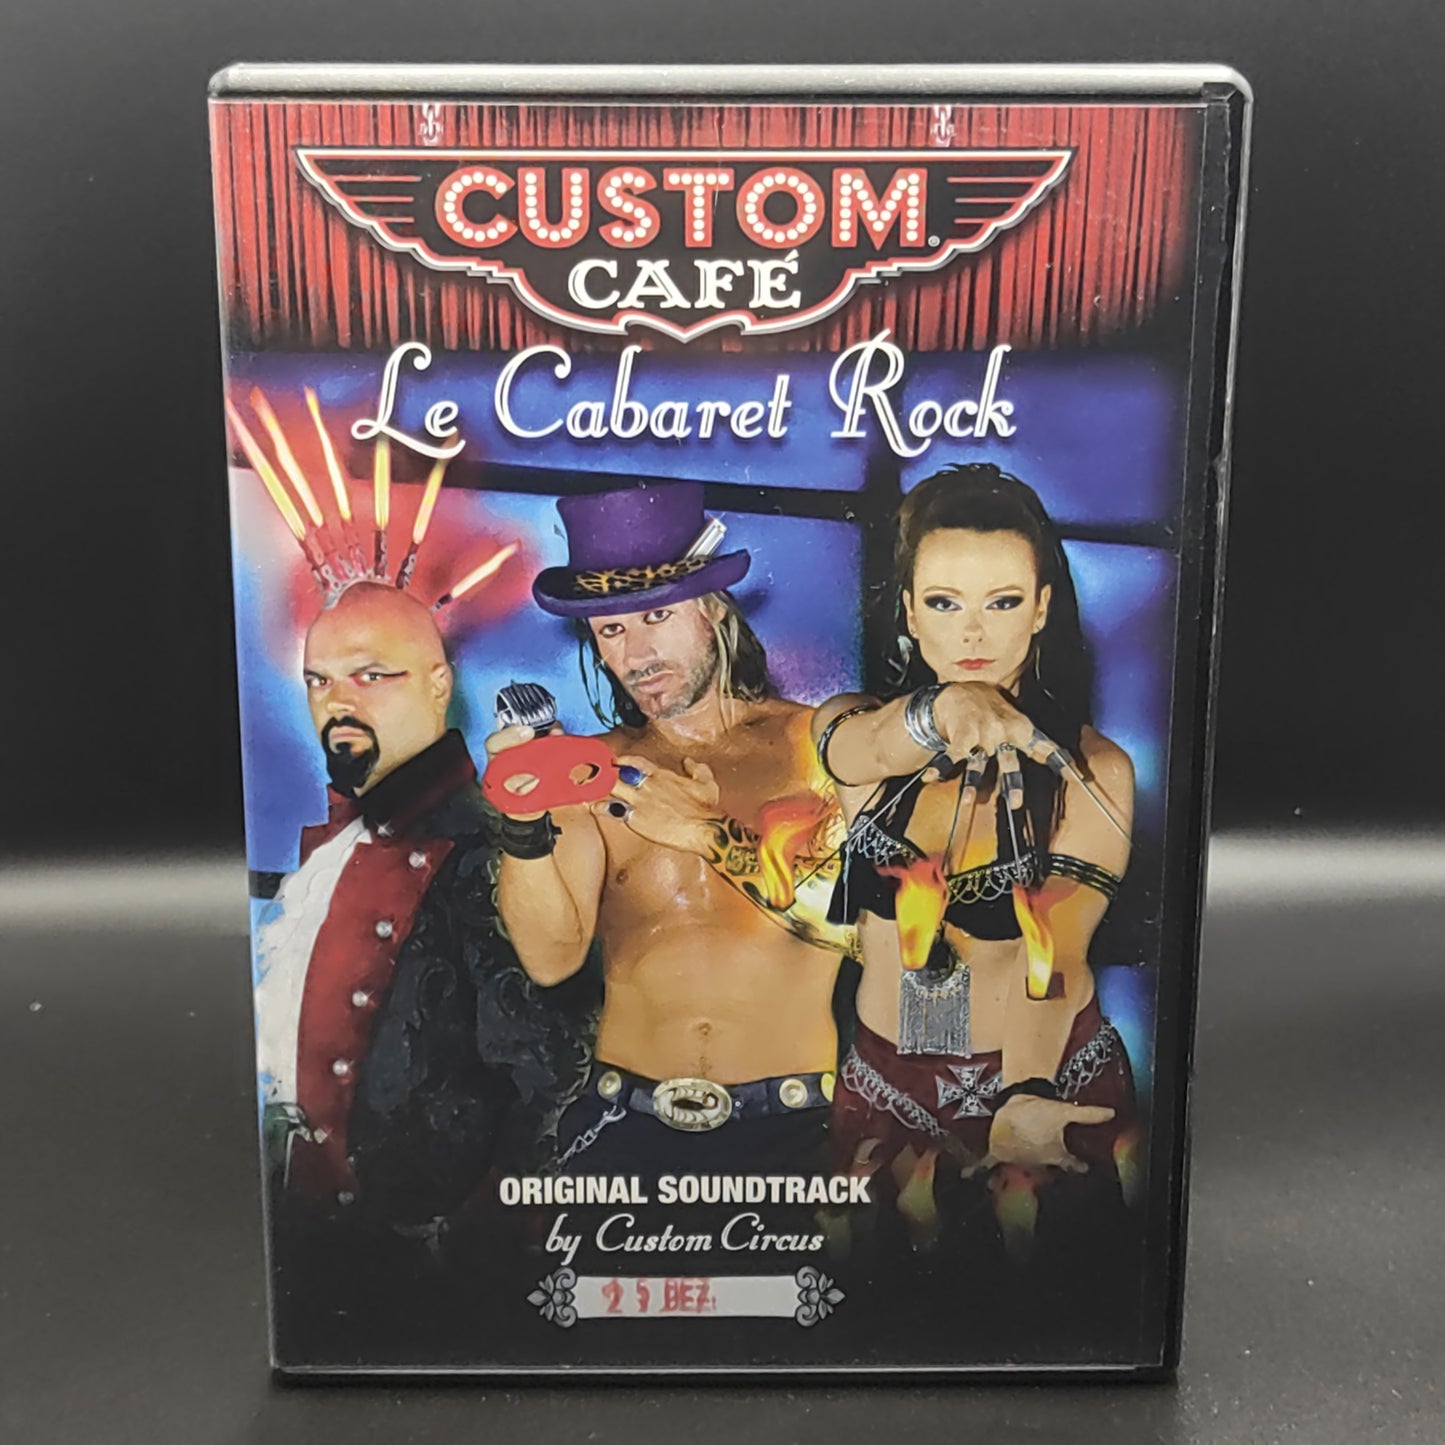 Le Cabaret Rock - Custom Café